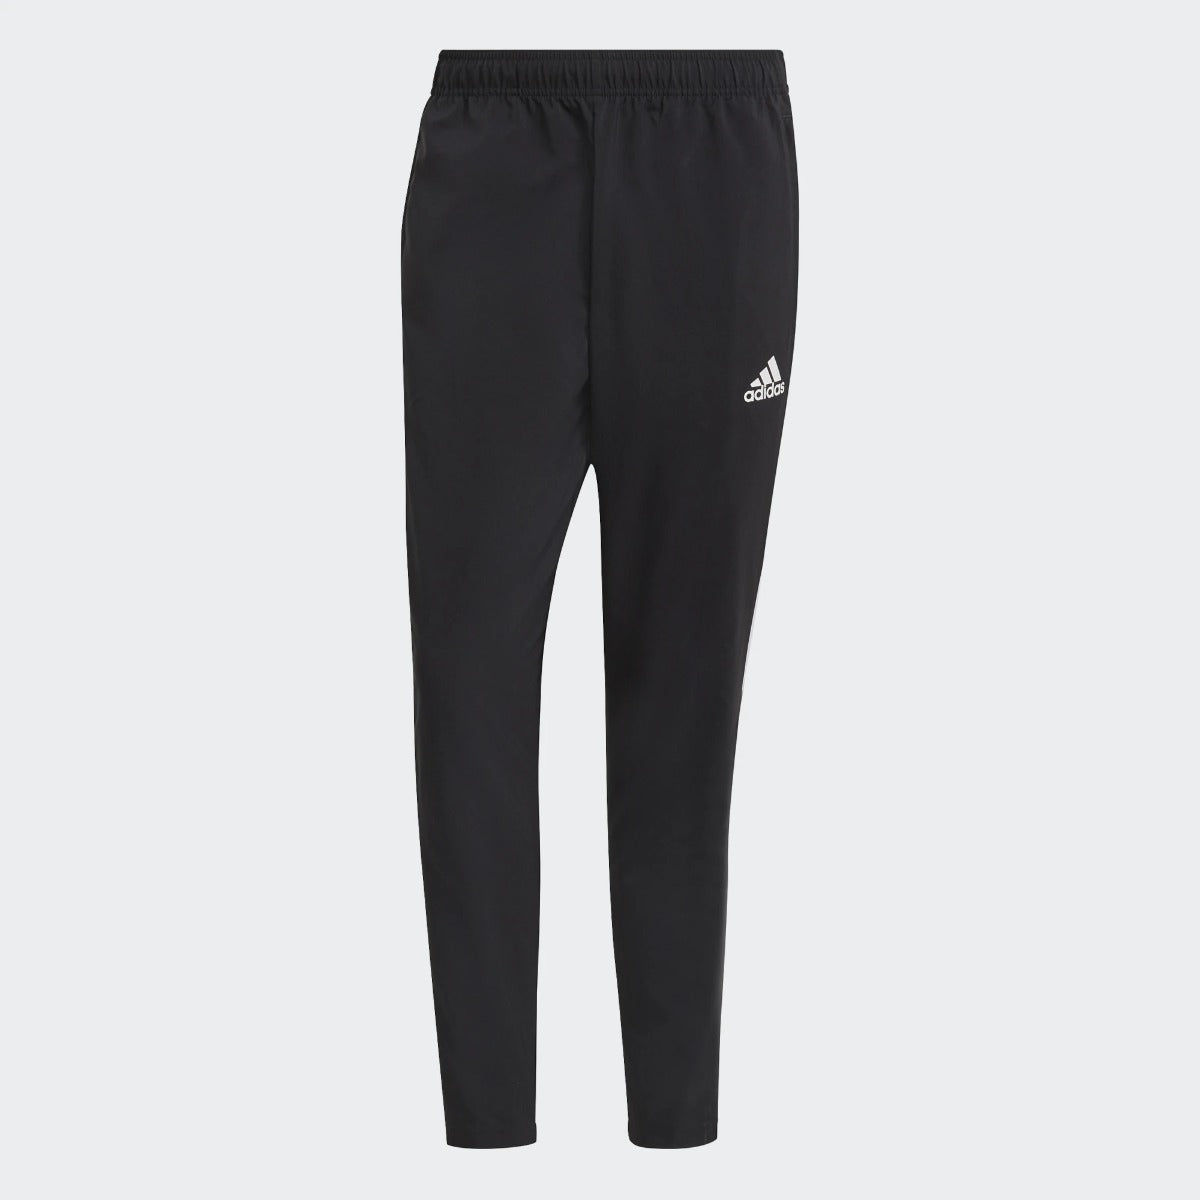 Pantalones de chándal Adidas Tiro - Negro/Blanco